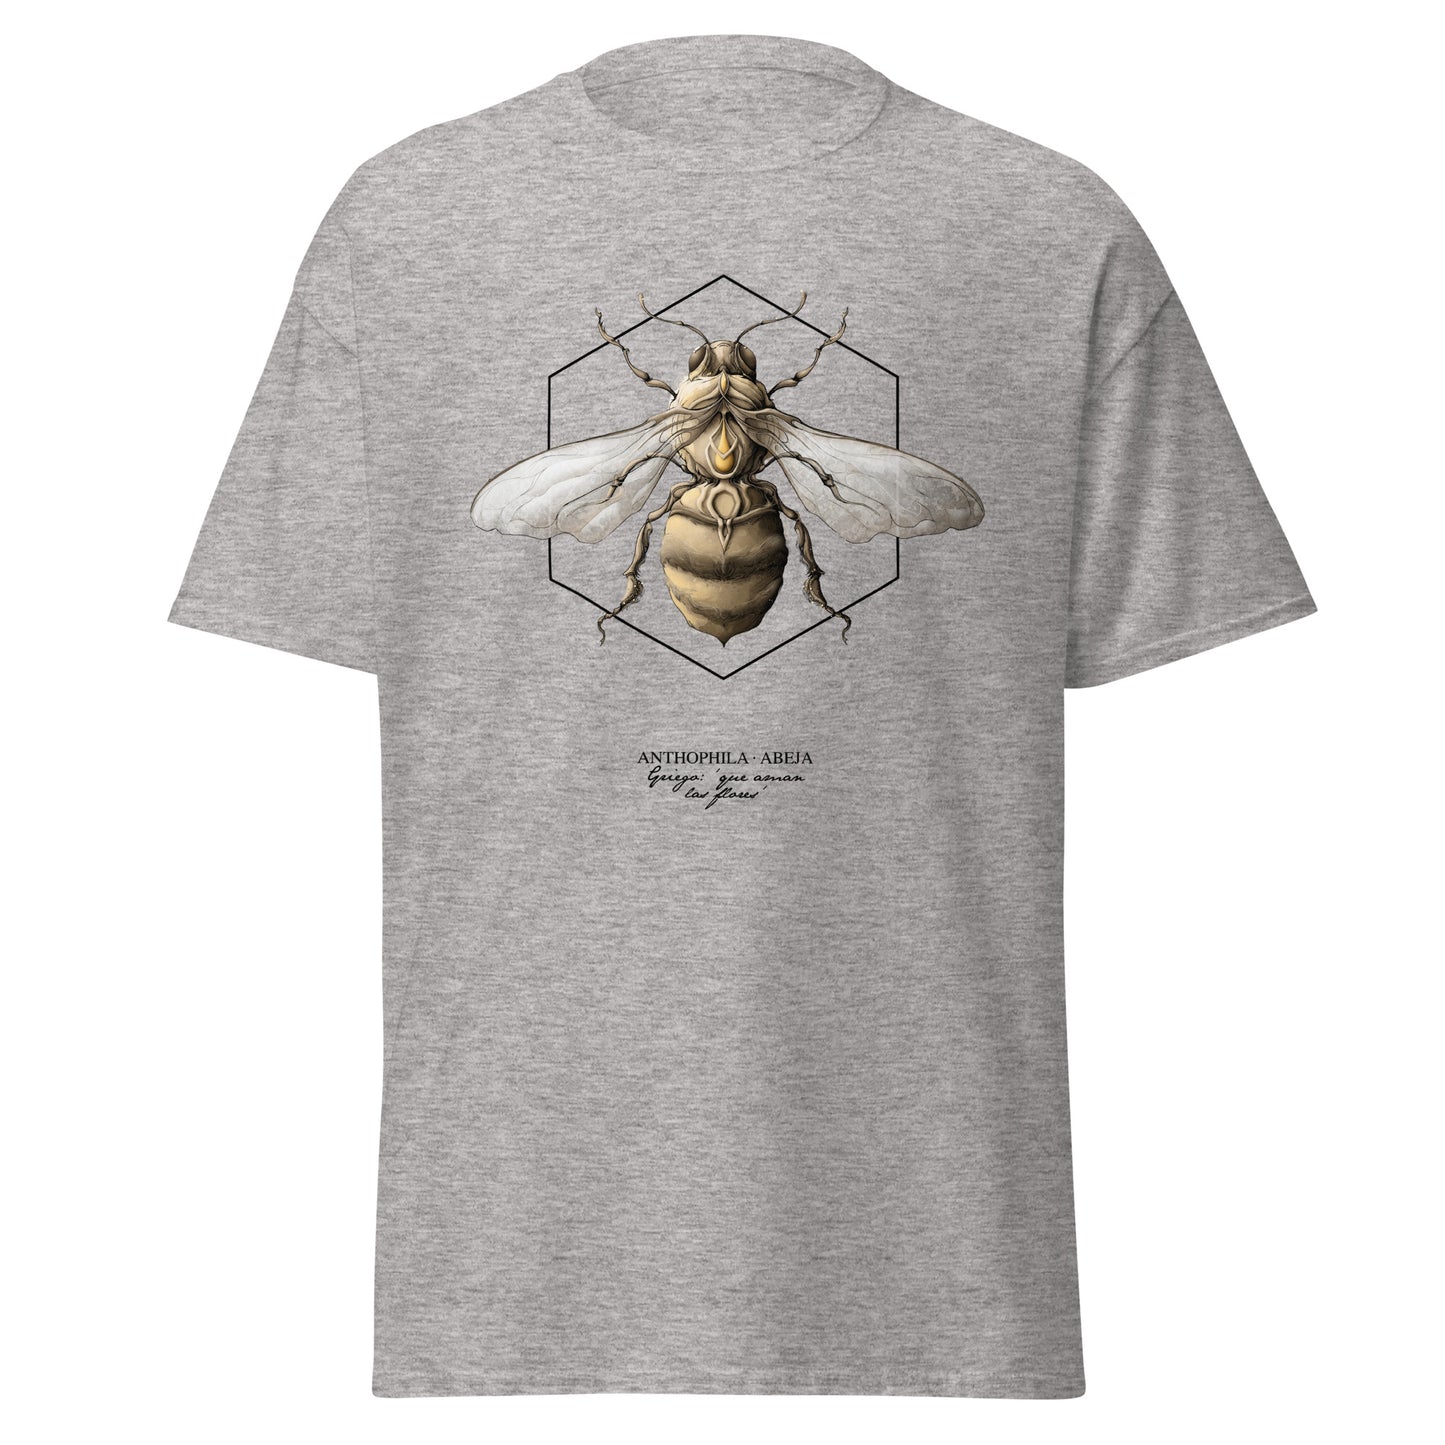 Bee t-shirt